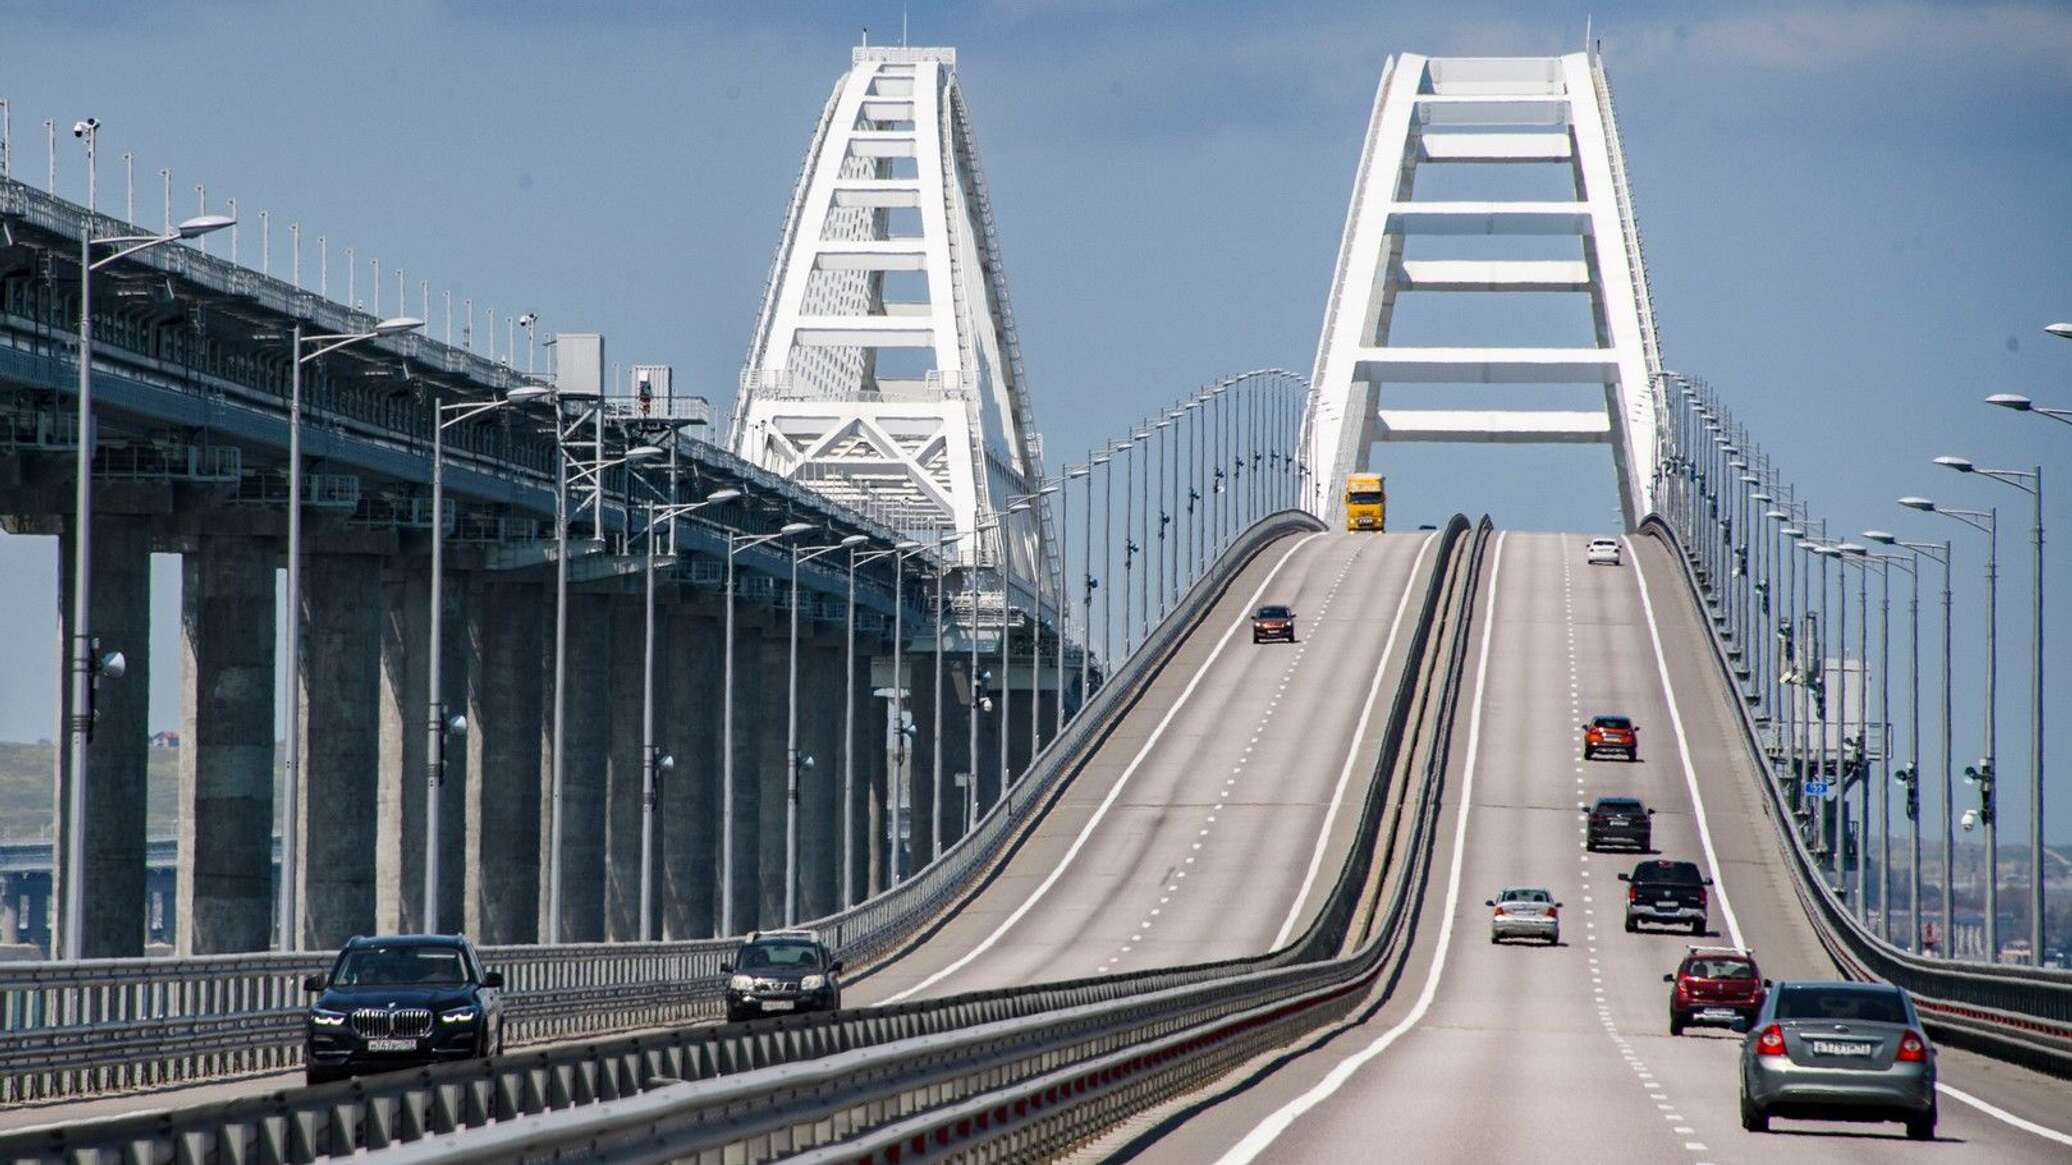 Крымский мост символ